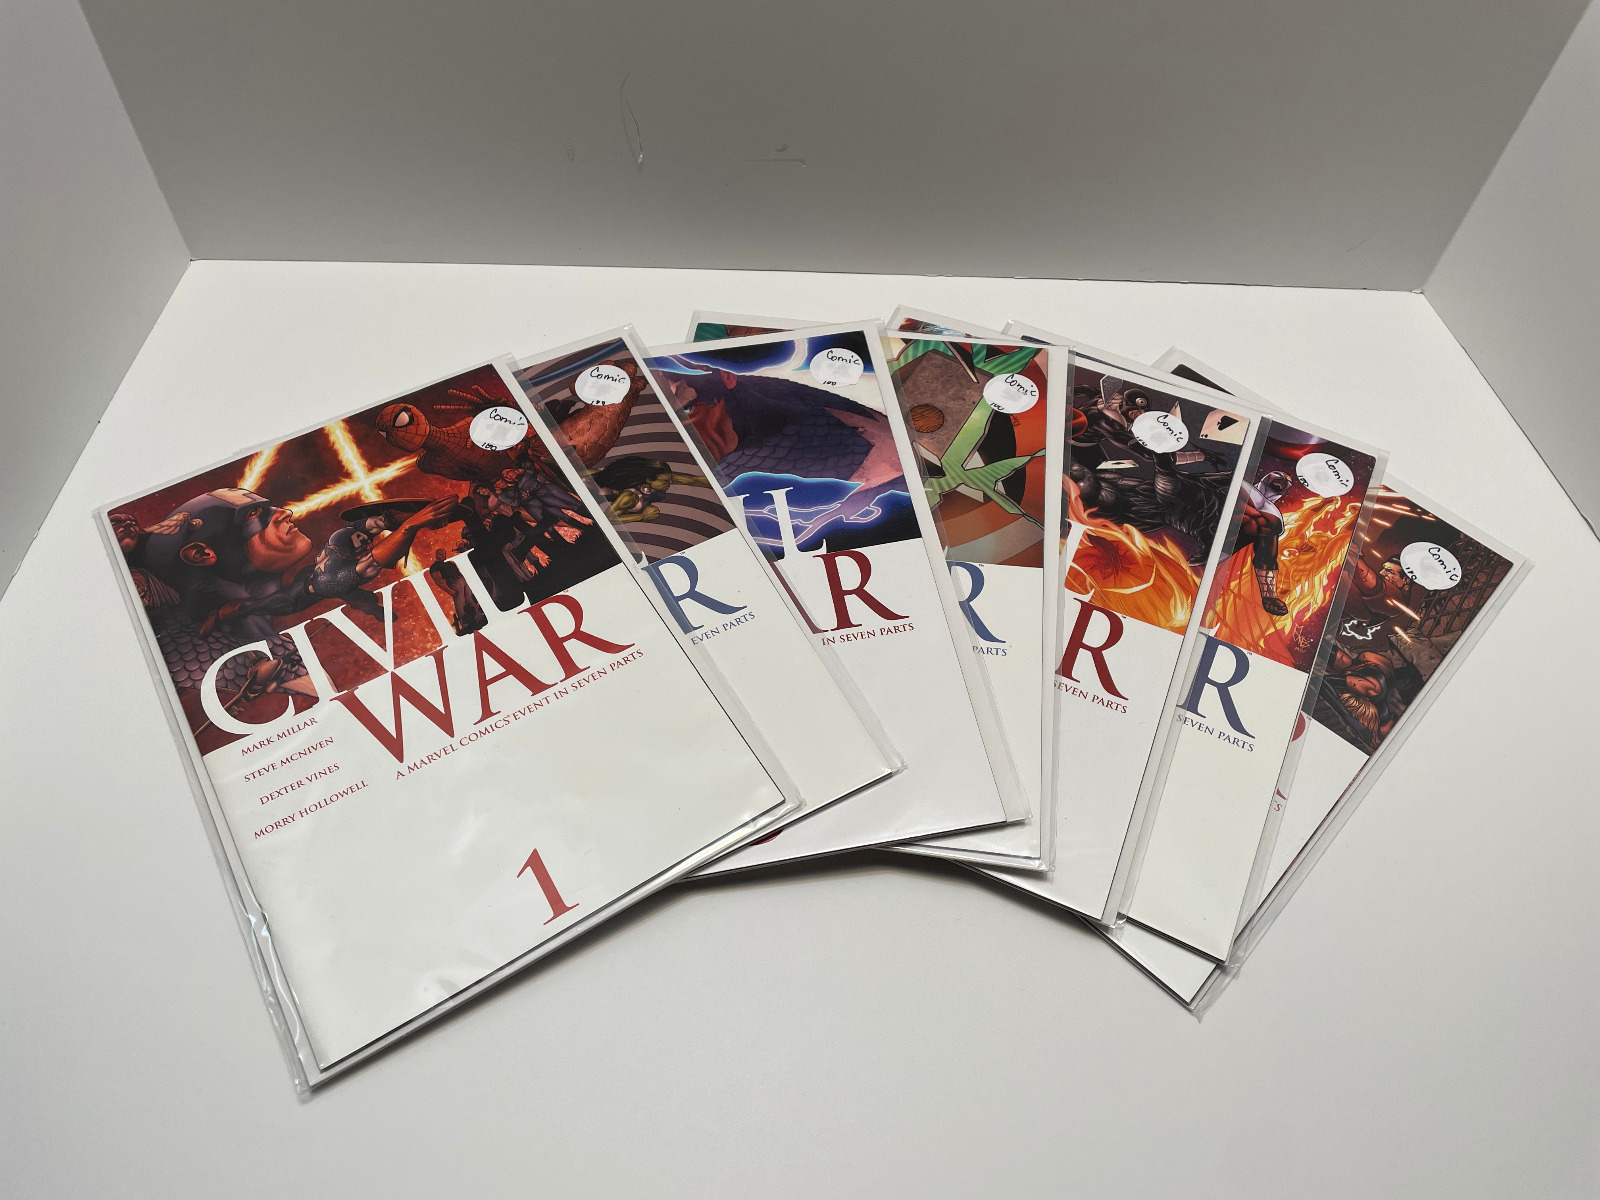 Civil War A Marvel Comics Event in Seven Parts Complete Set #1 #2 #3 #4 #5 #6 #7